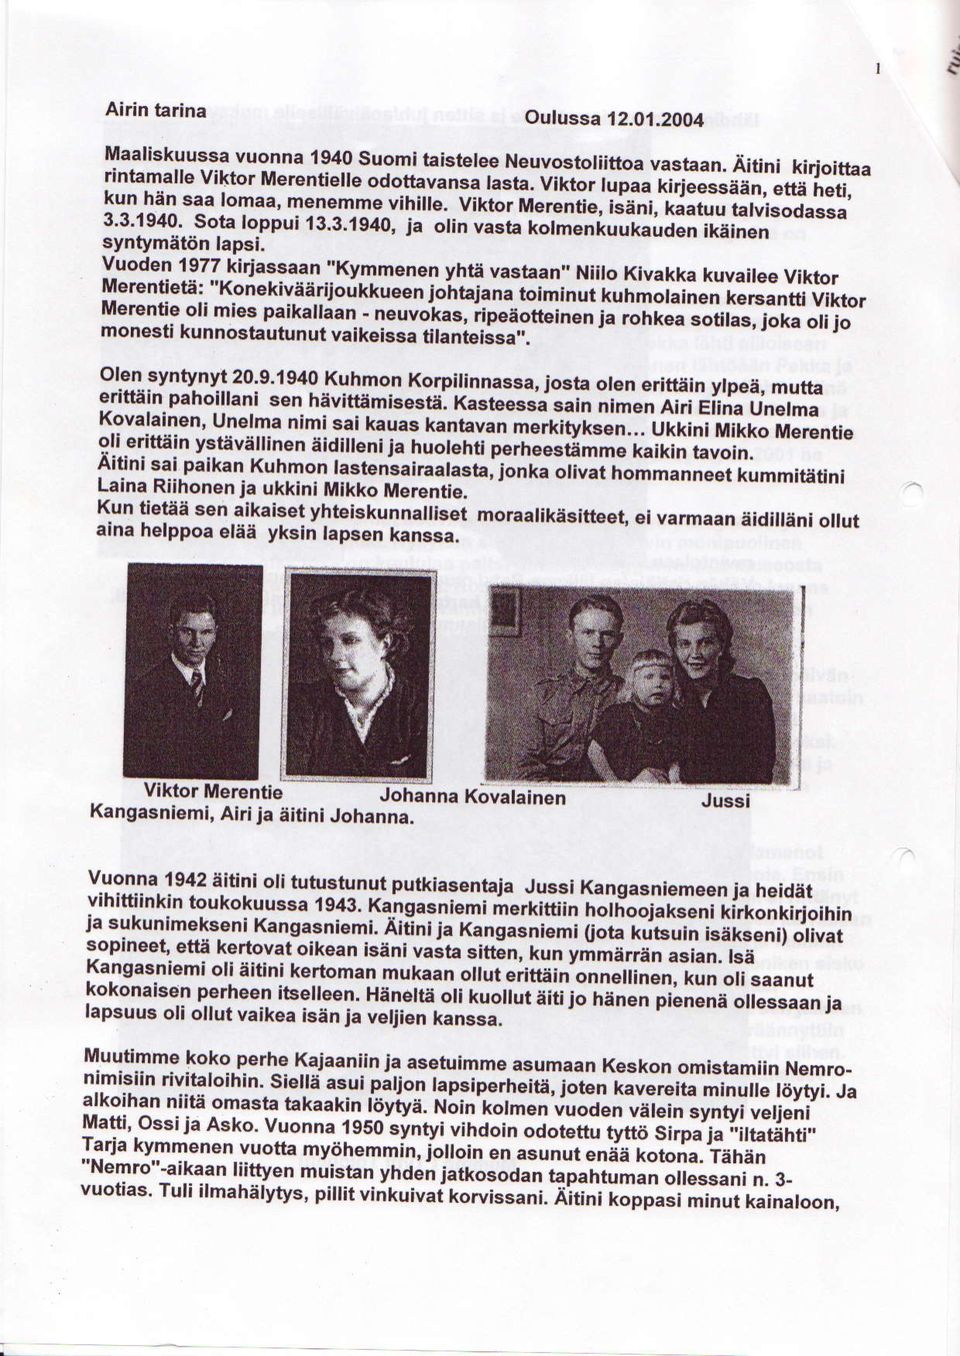 v-uoden 1977 kirjassaan "Kymmenen yhu vastaan', Niiro Merentiet.: Kivakka kuvairee "Konekiveadjoukkueen viktor loirtalana toimi""ir"-rr.n.i"i""i Merentie.